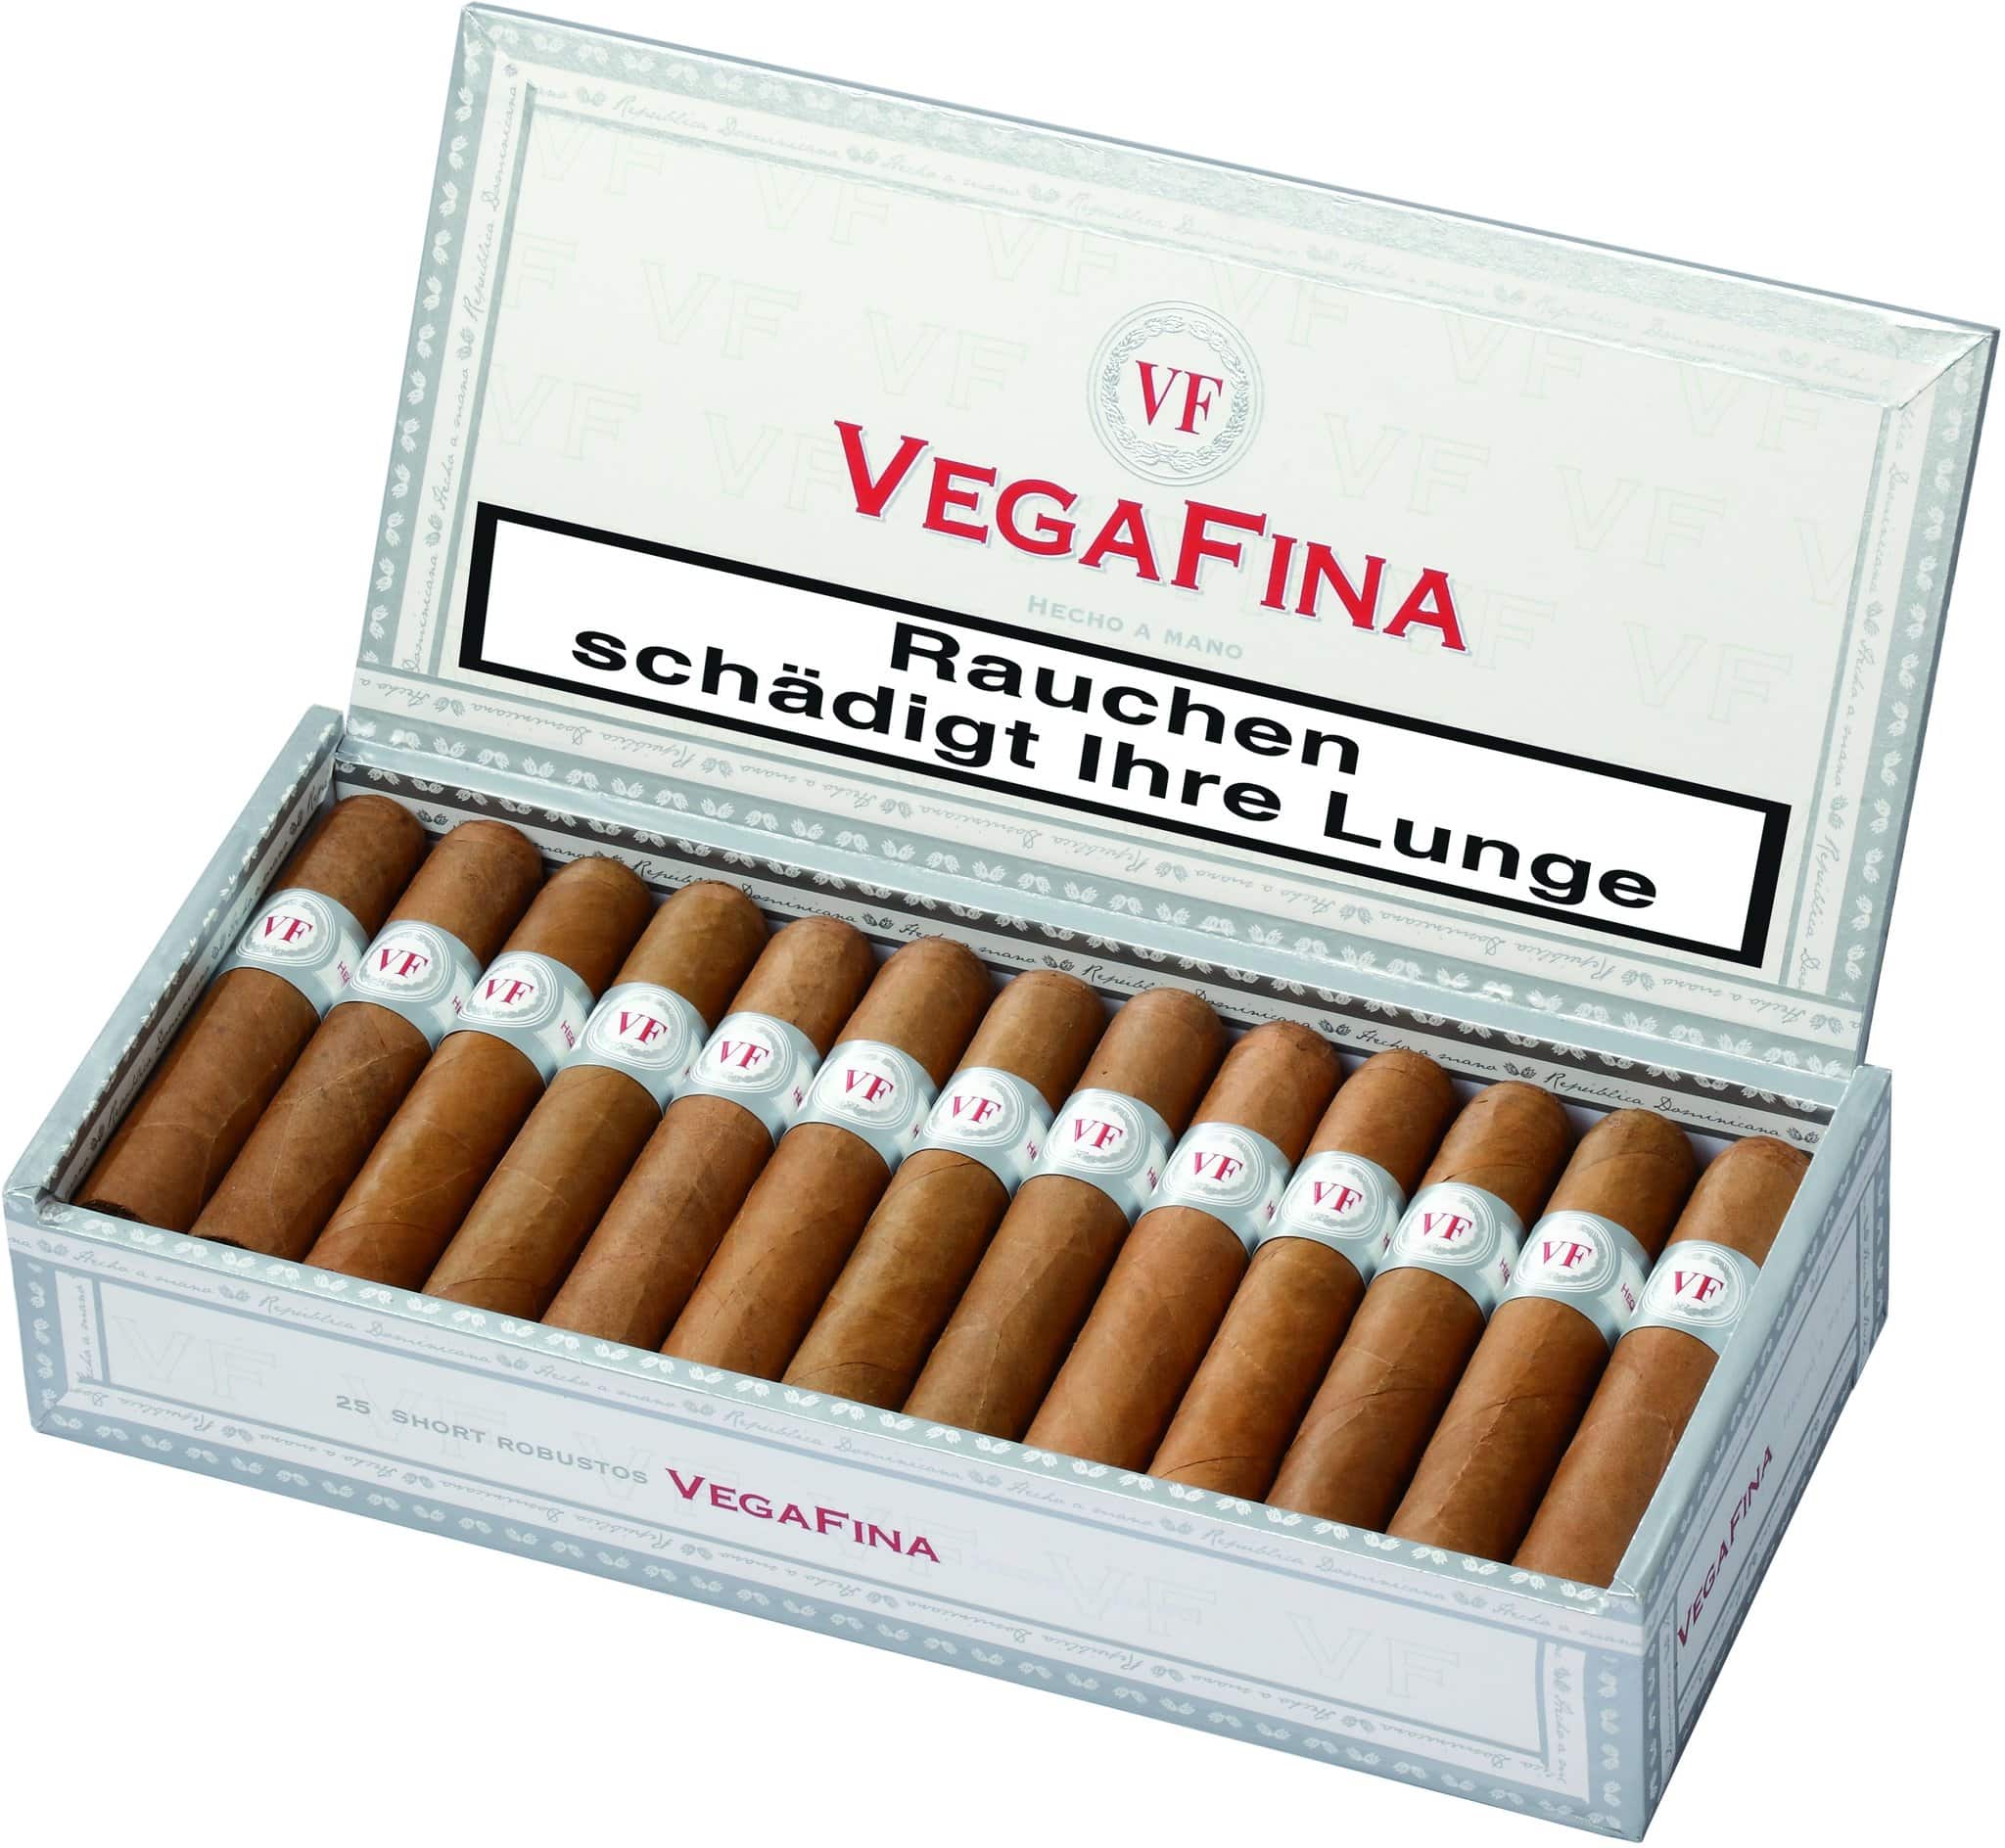 Vegafina Zigarren, 25 Short Robustos